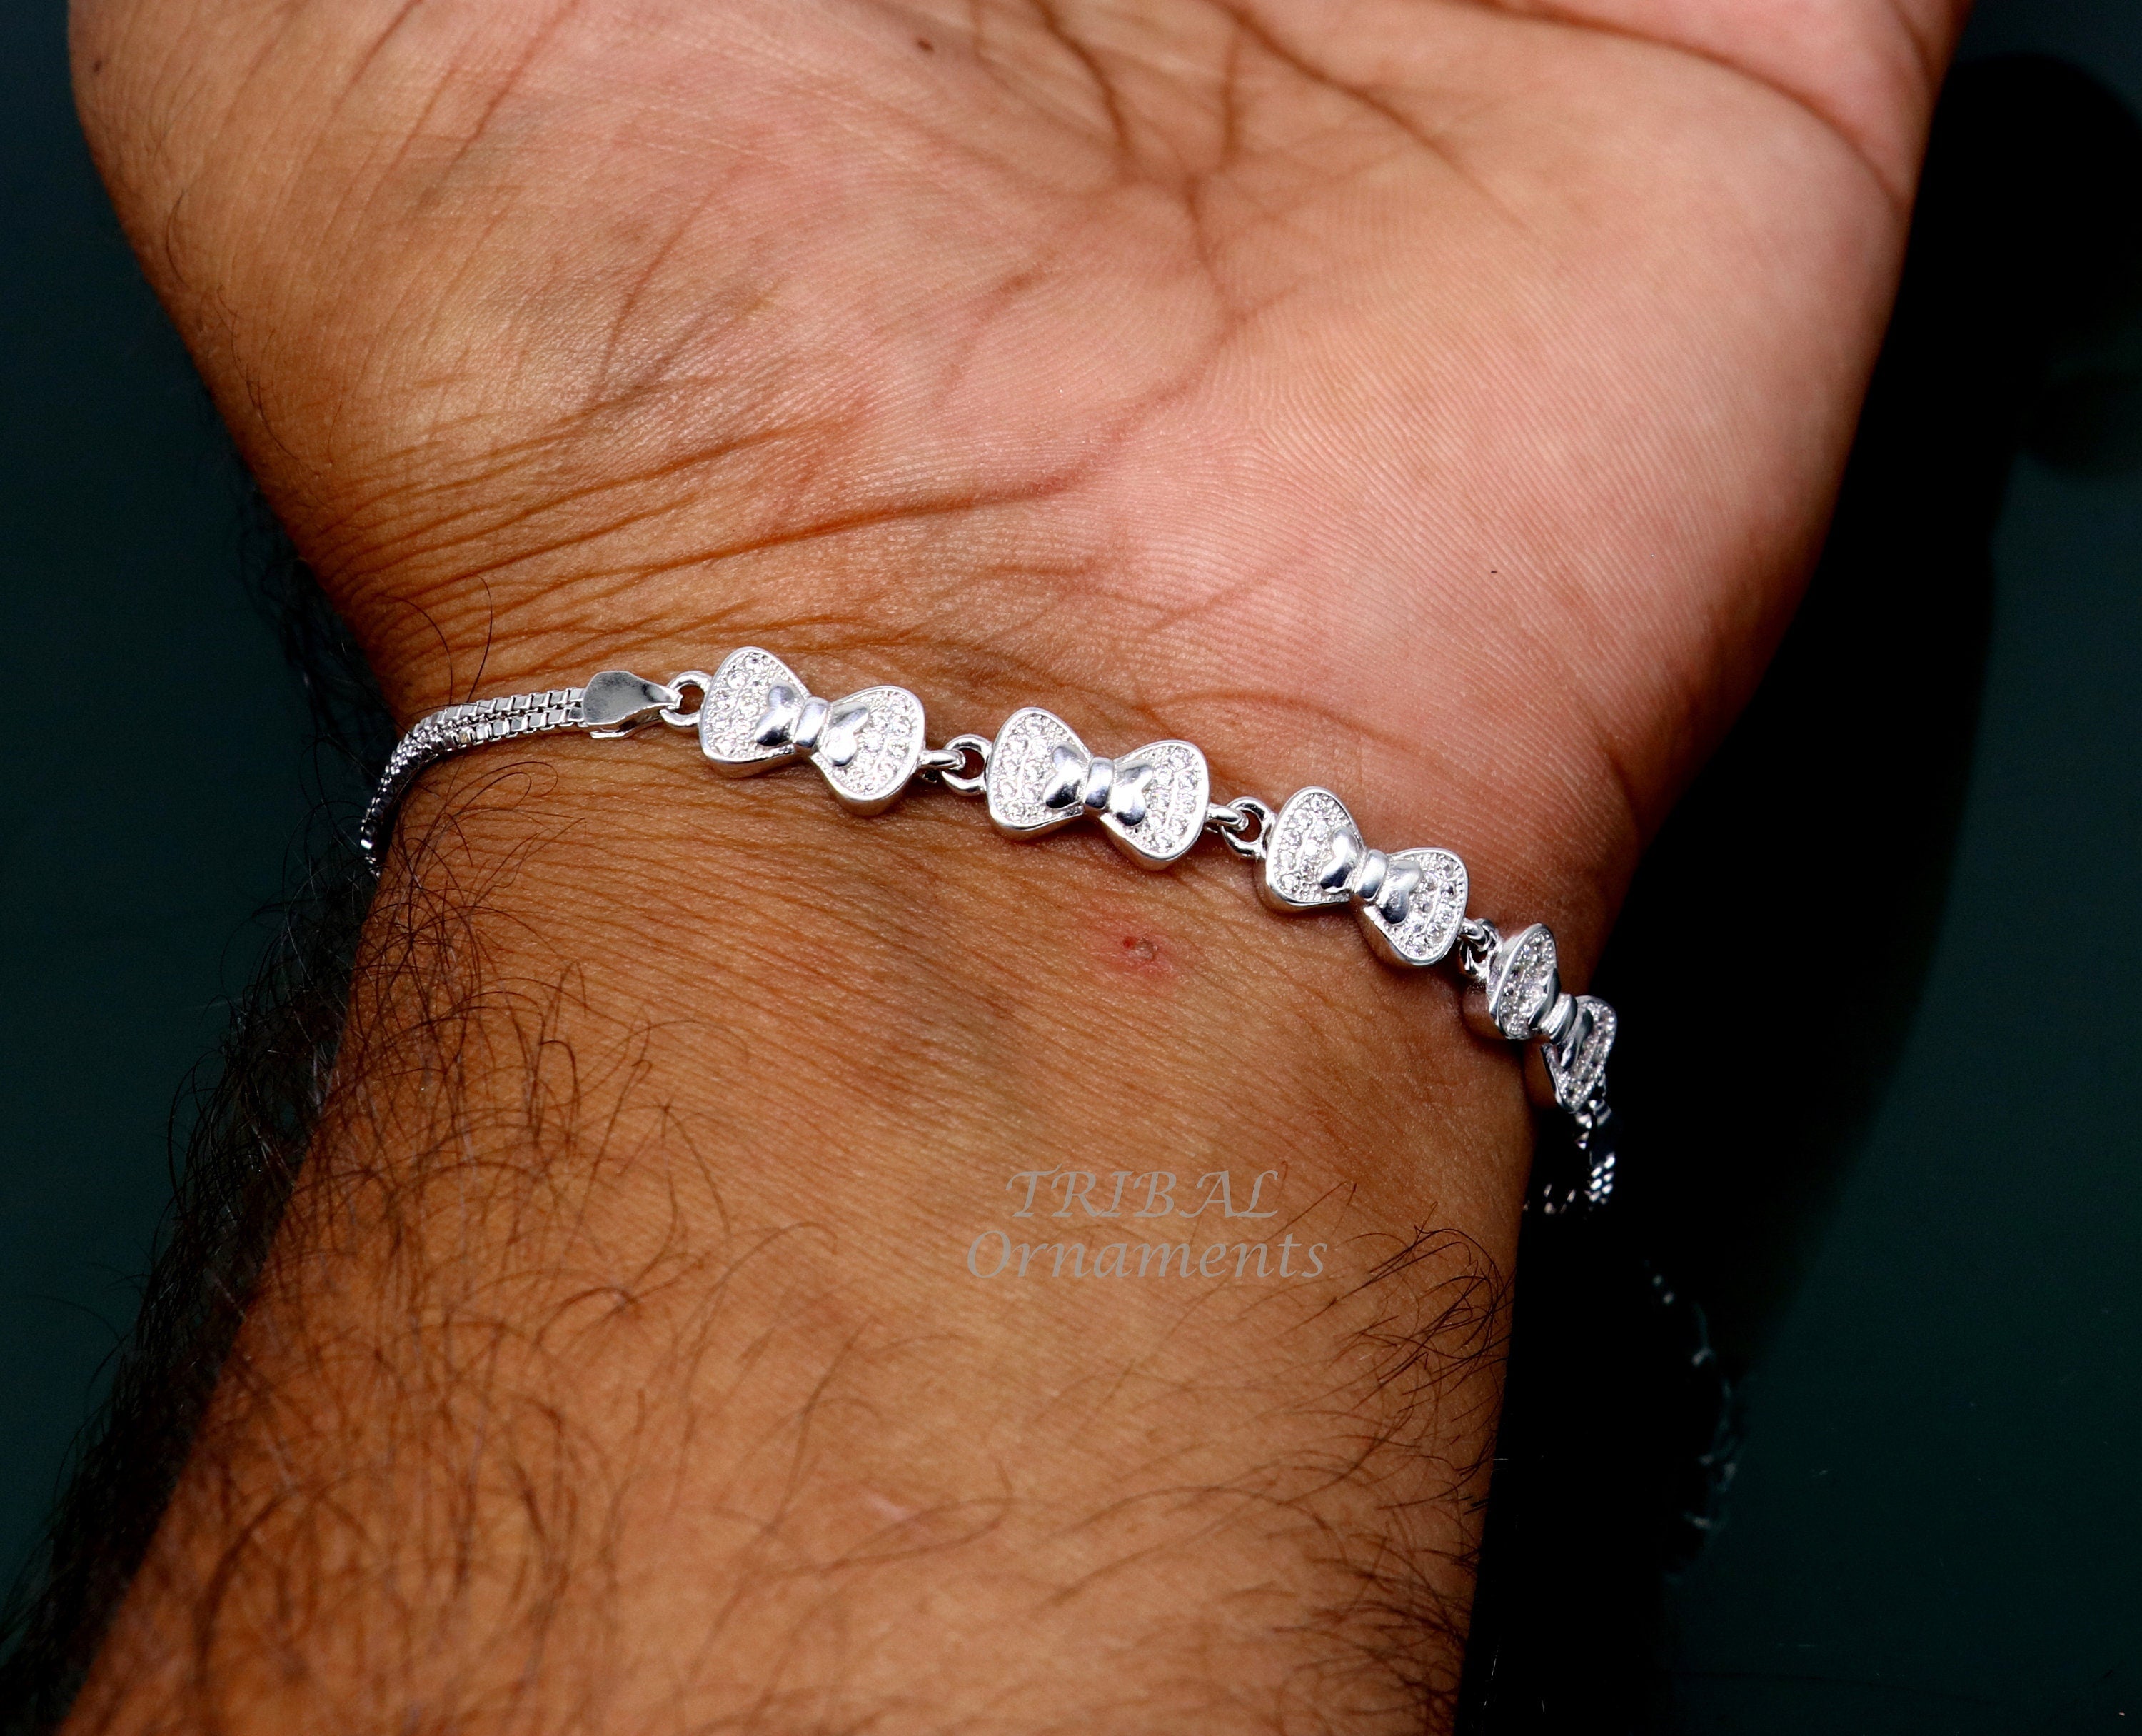 SANNYRA Happy Birthday Gifts Bracelet Heart Charm India | Ubuy